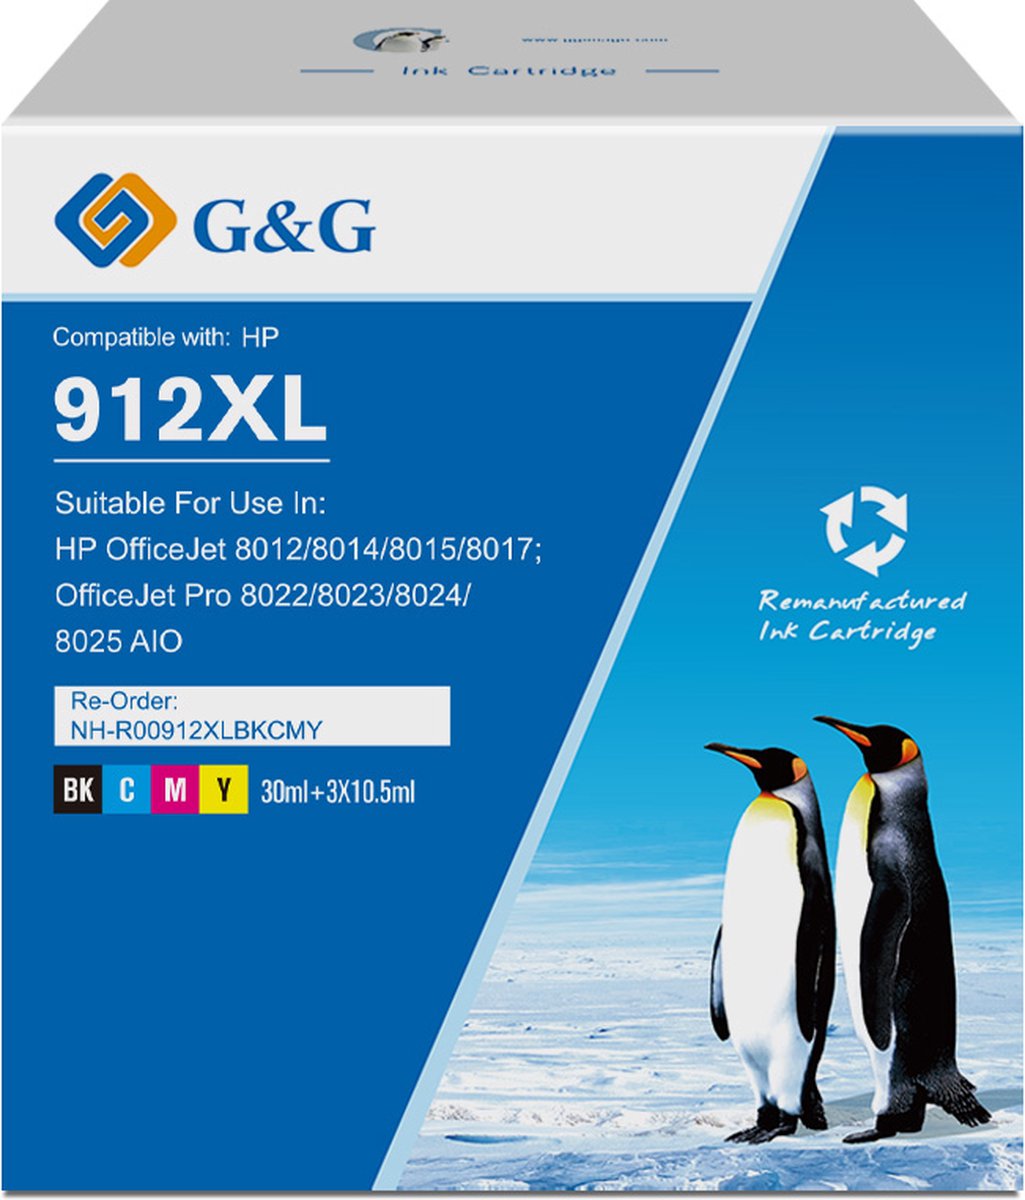 912XL Cartouches d'encre HP 912XL 912 XL Compatible pour HP